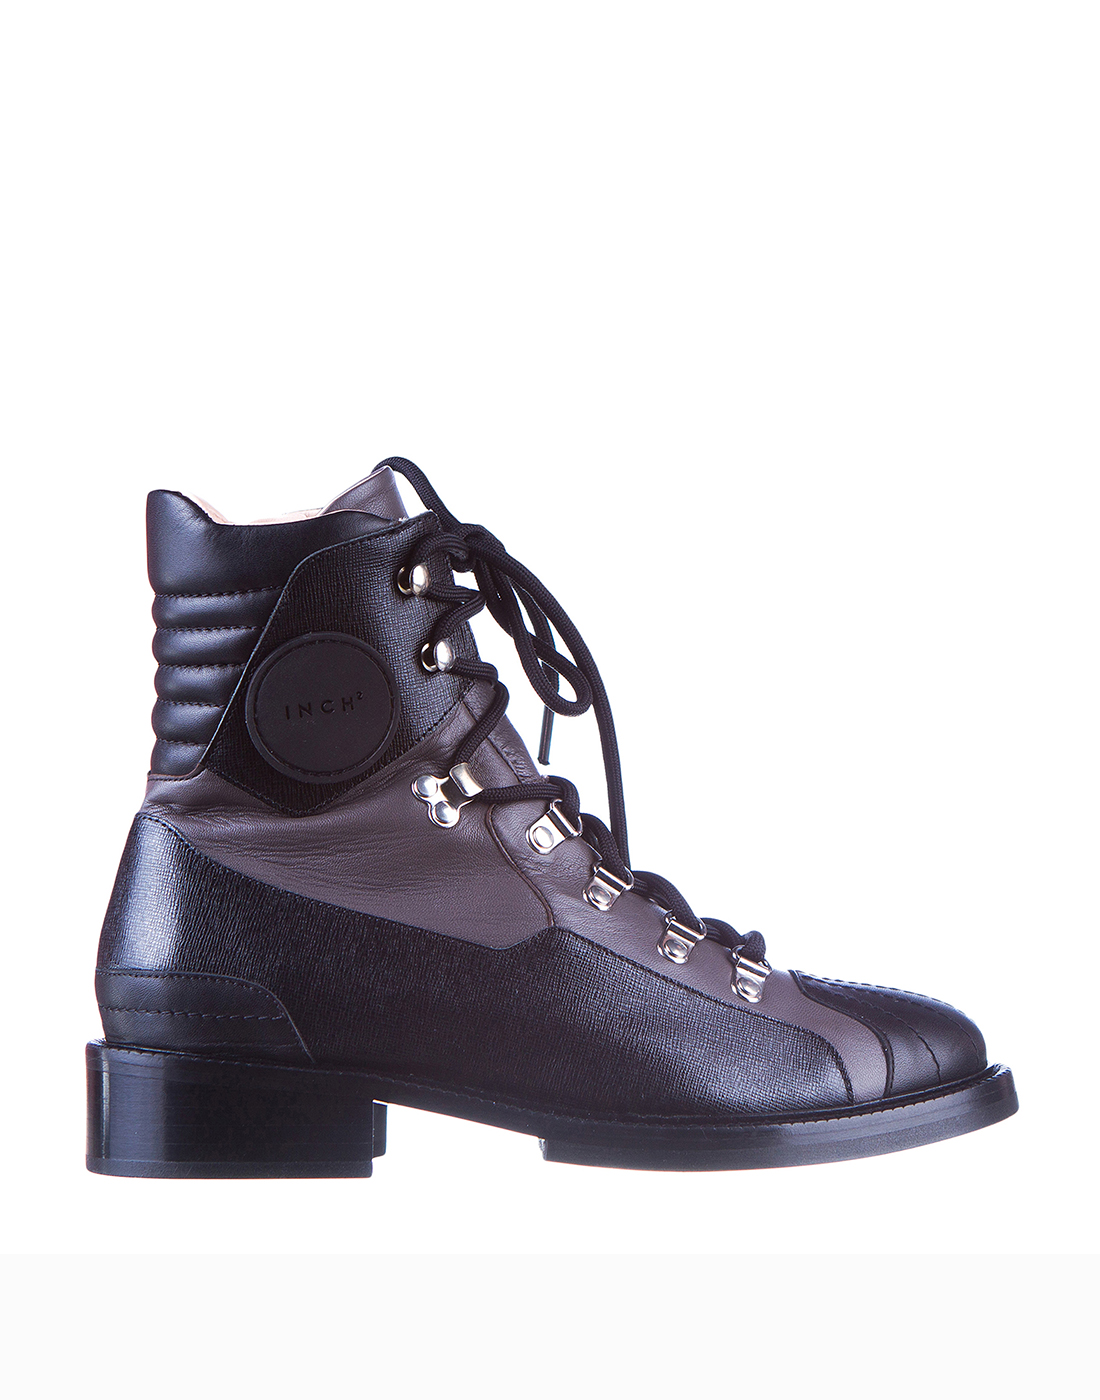 Ботинки черные женские INCH2 S8778-1